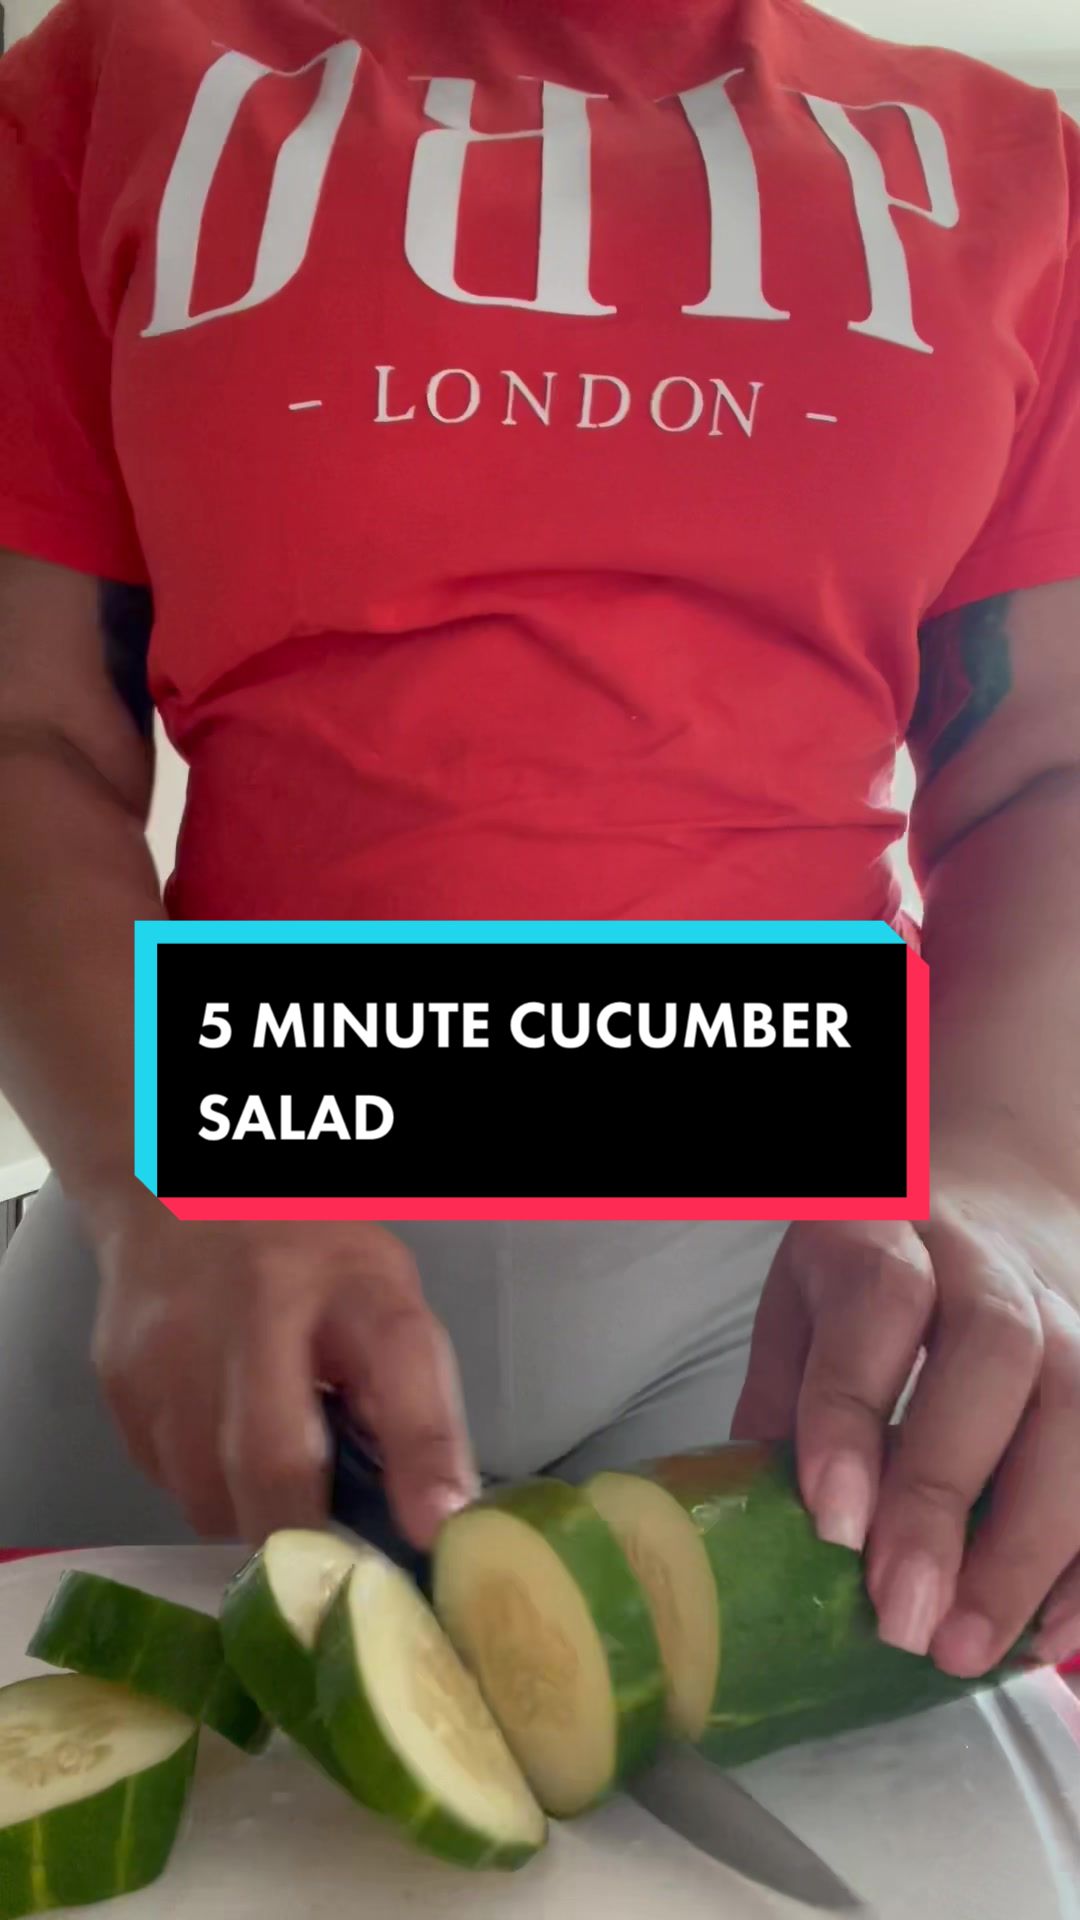 @5 MINUTE CUCUMBER SALAD #cucumbers #salad #foodtiktok #fyp